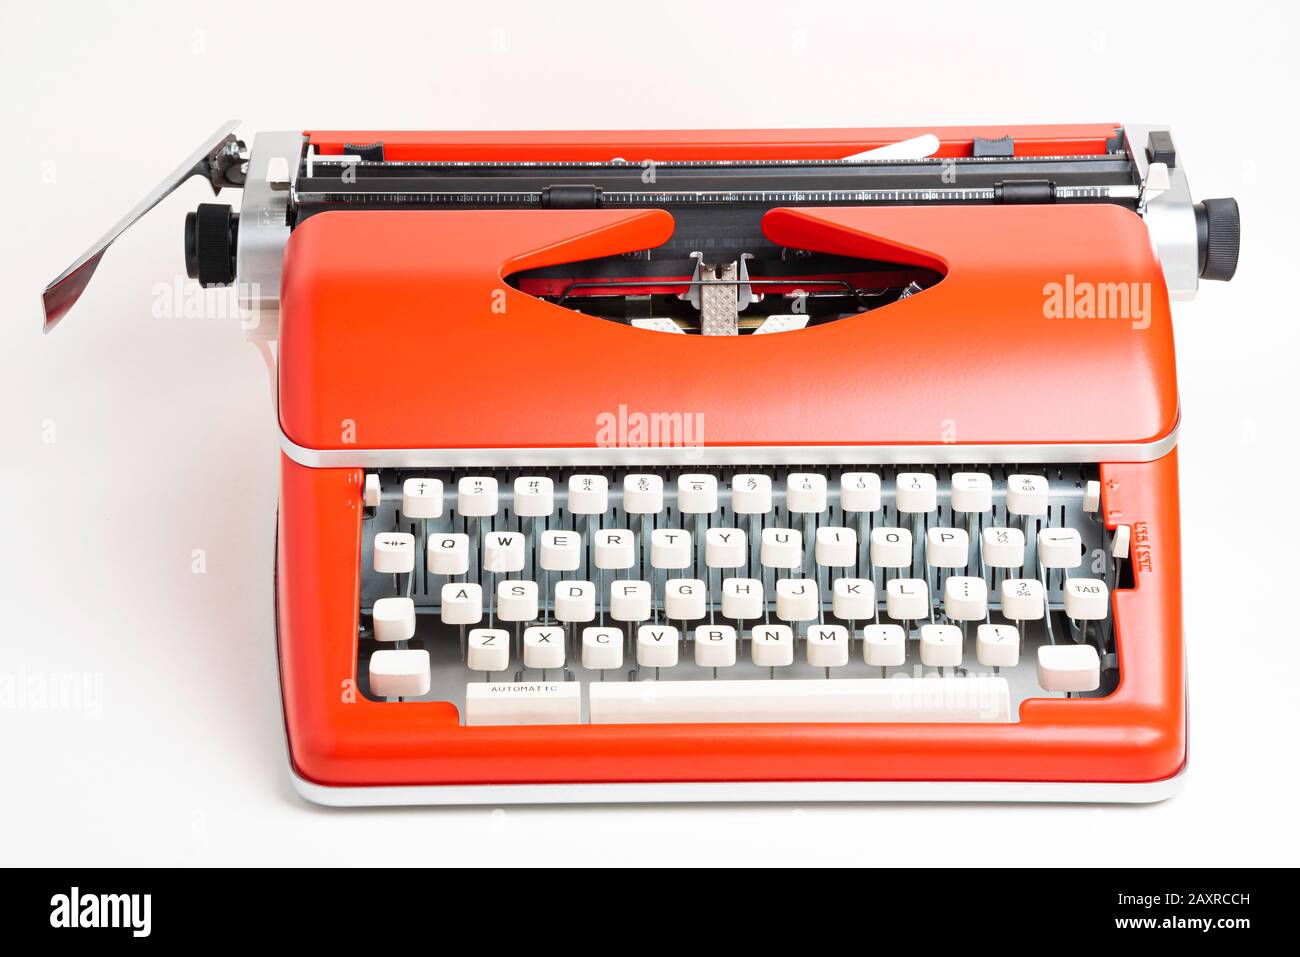 Un'immagine da studio di una macchina da scrivere manuale in stile retrò  con tastiera in plastica color avorio e rivestimento in metallo  rosso-arancione Foto stock - Alamy